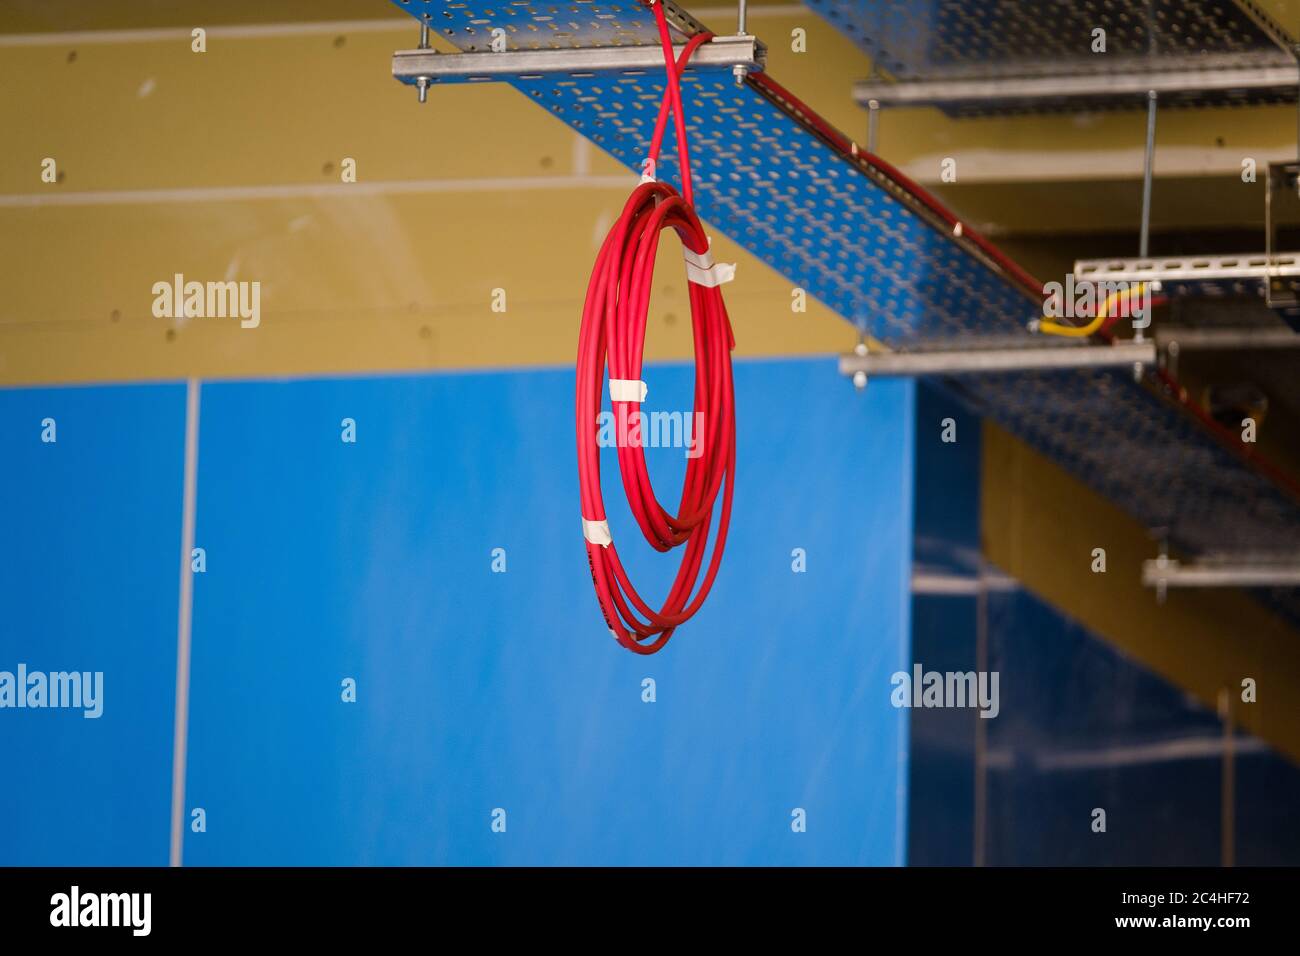 La bobine de câble électrique est suspendue au plafond dans le bâtiment en construction Banque D'Images